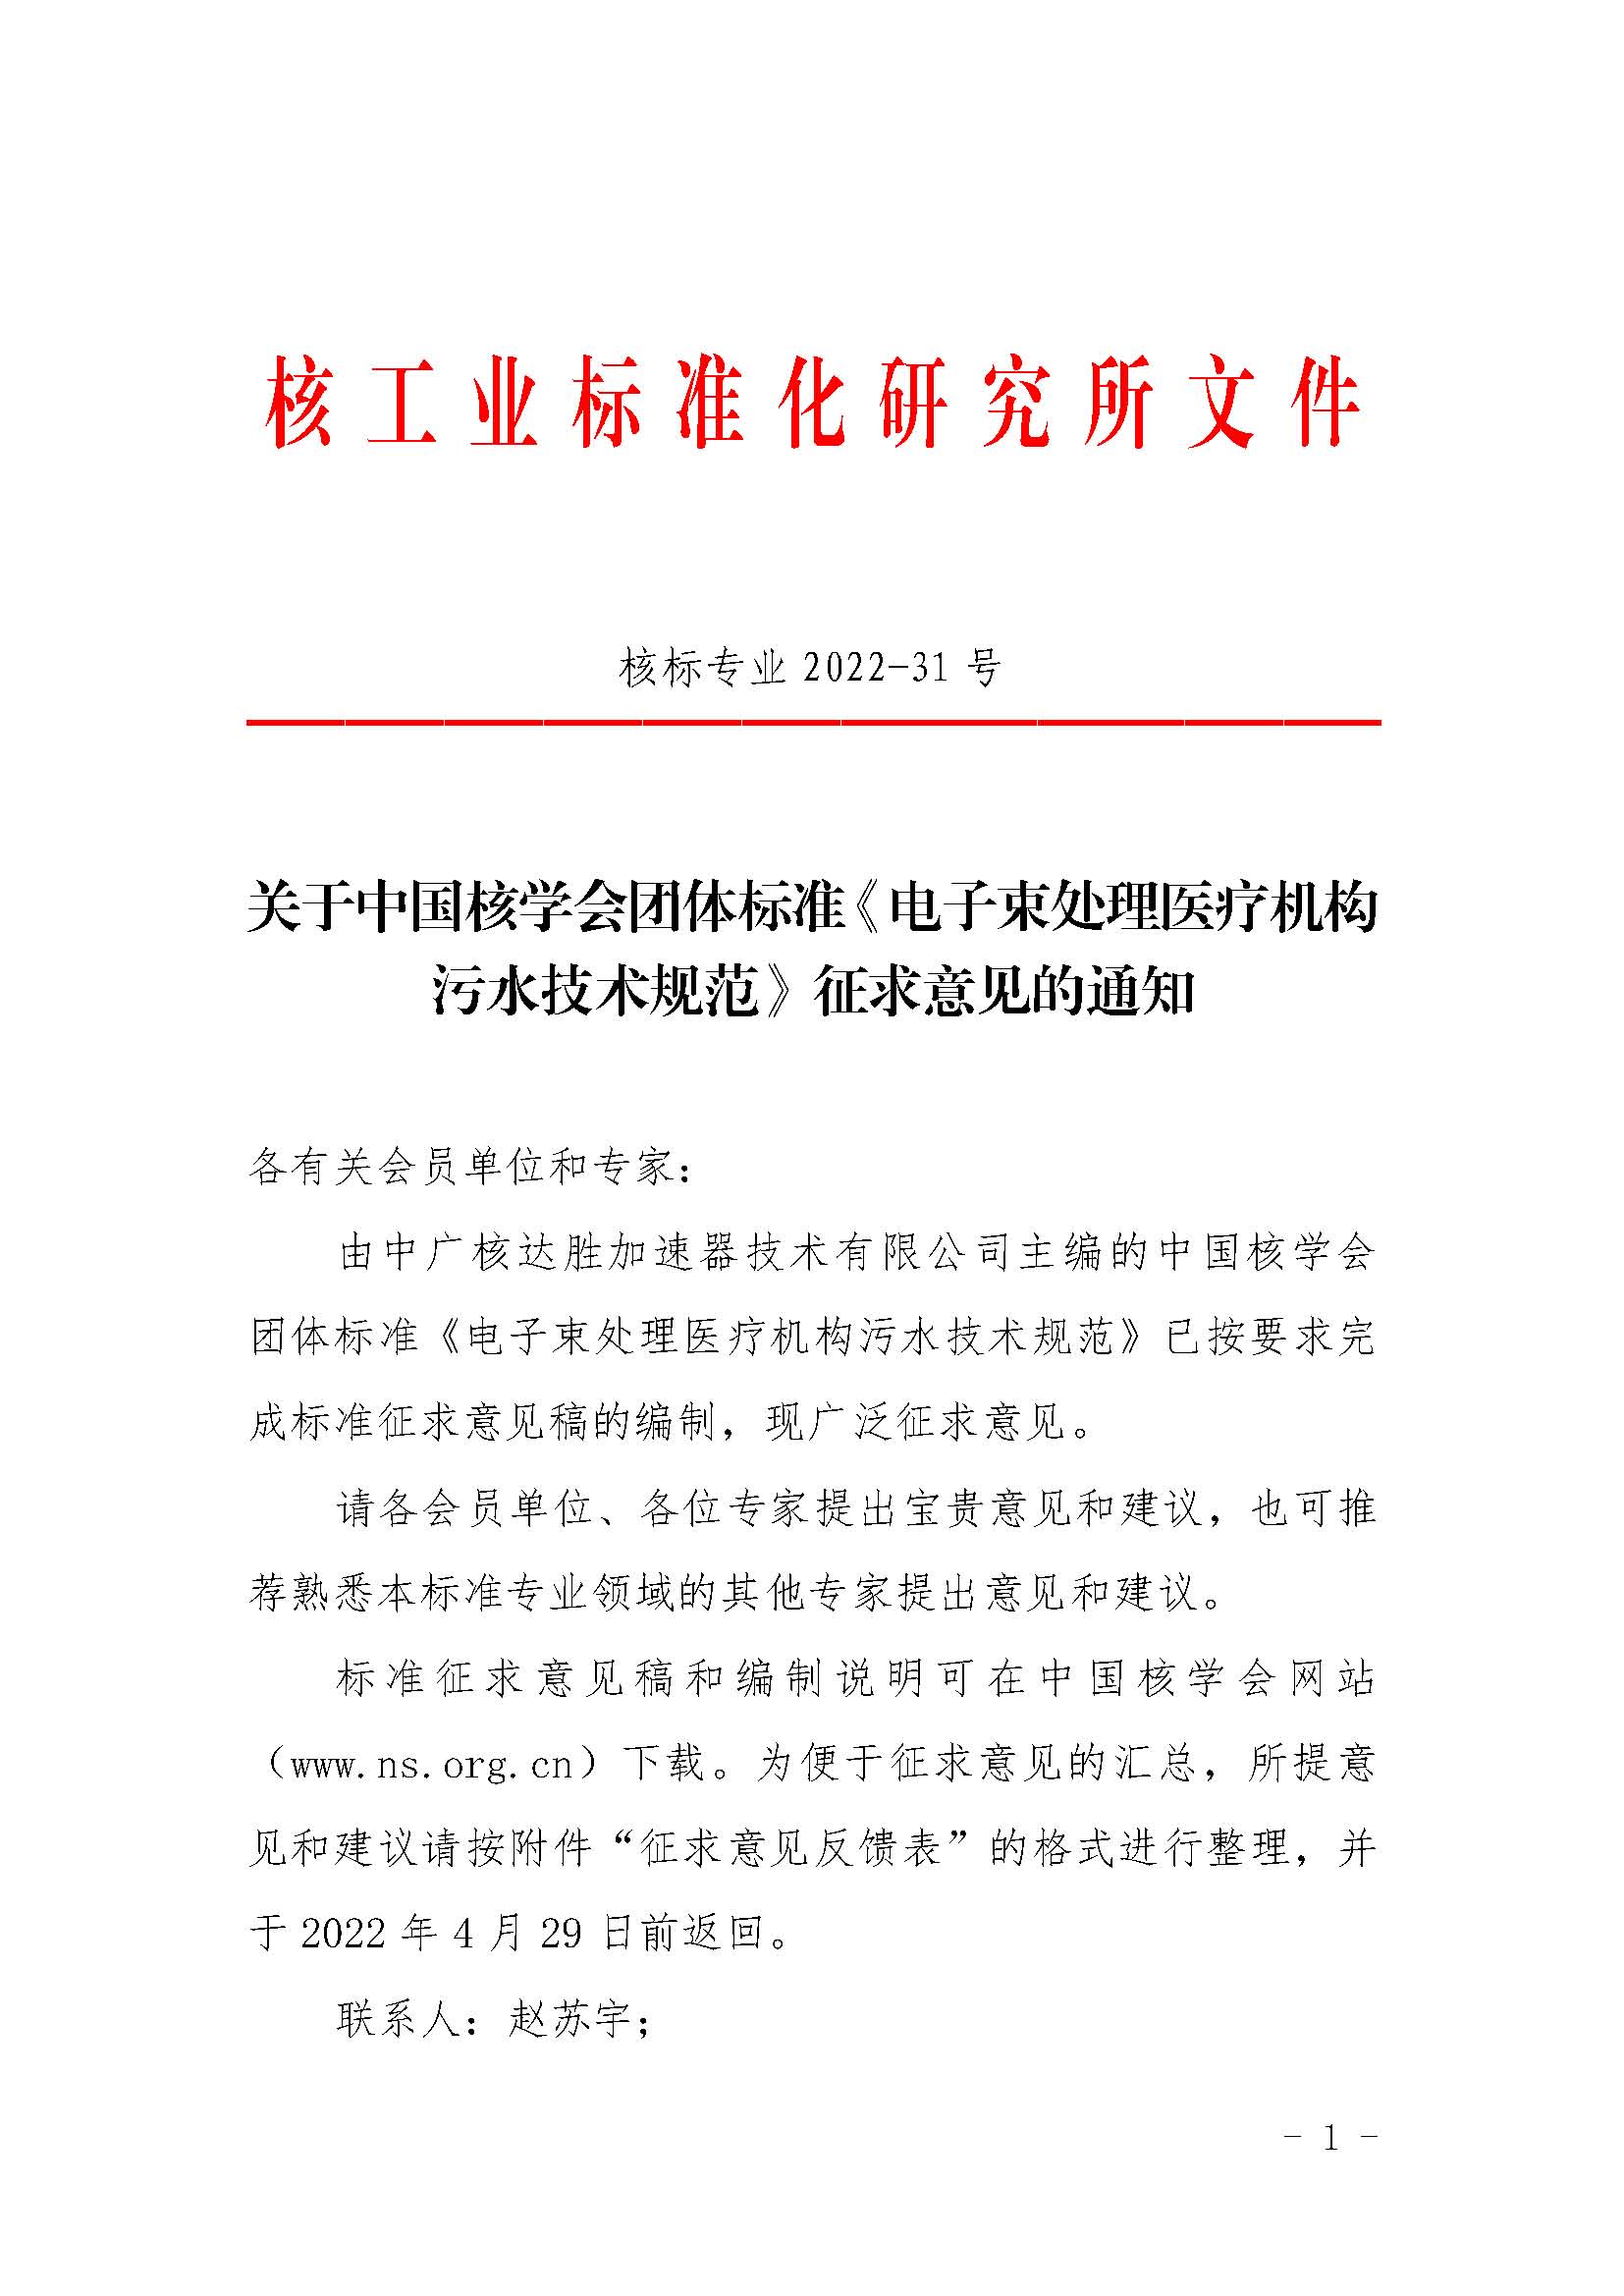 关于中国核学会团体标准《电子束处理医疗机构污水技术规范》征求意见的通知_页面_1.jpg